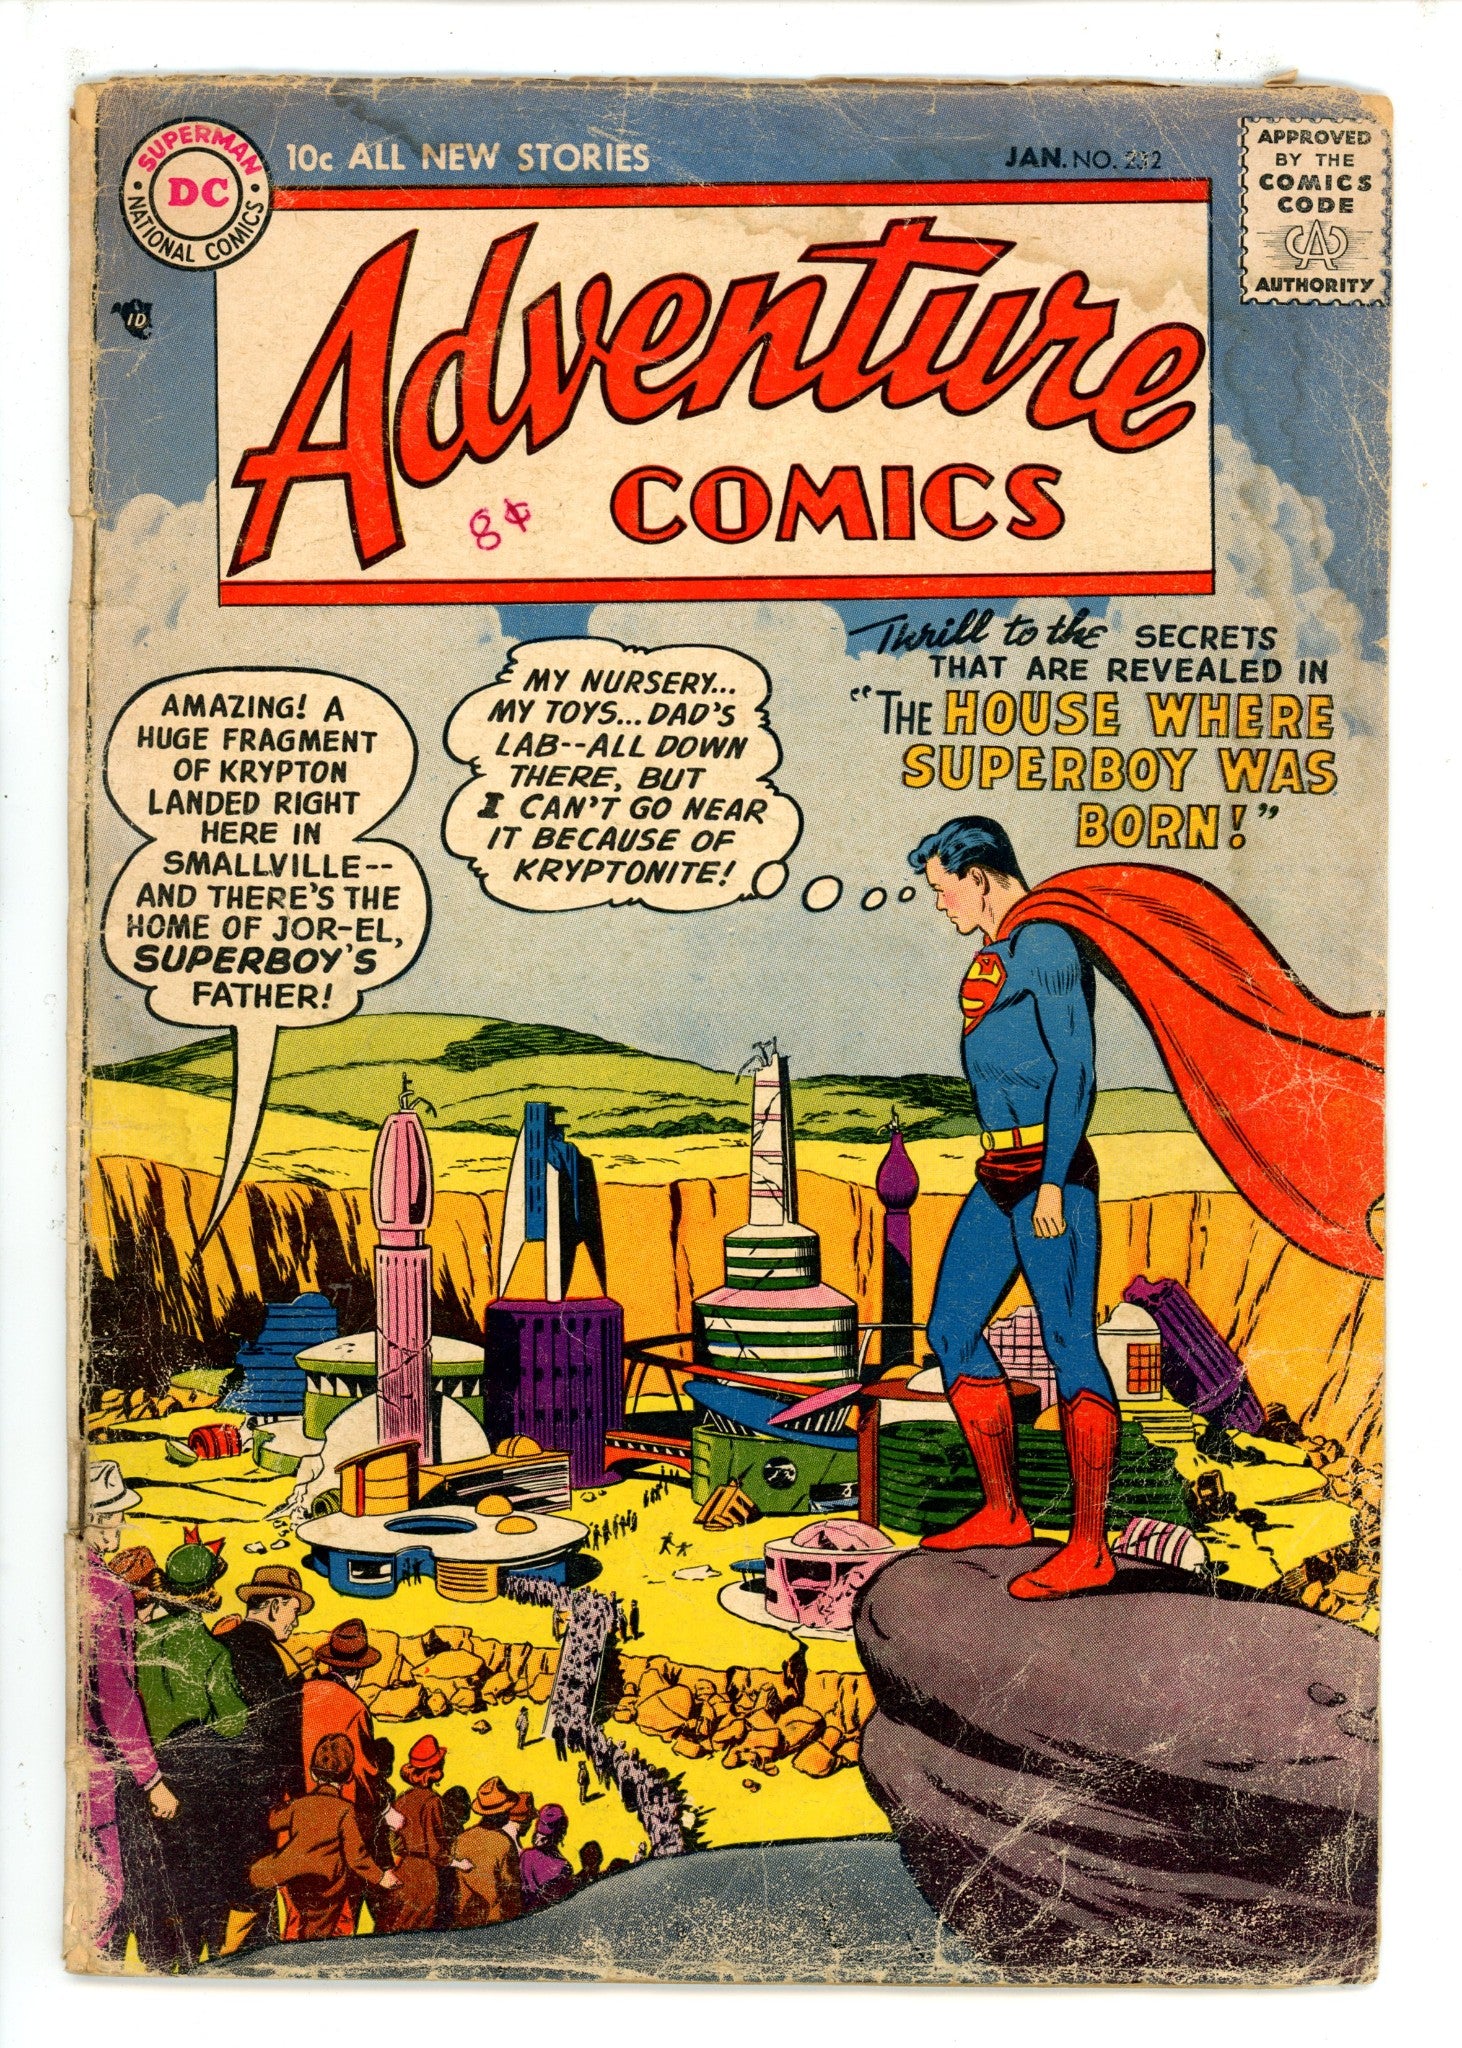 Adventure Comics Vol 1 232 GD-